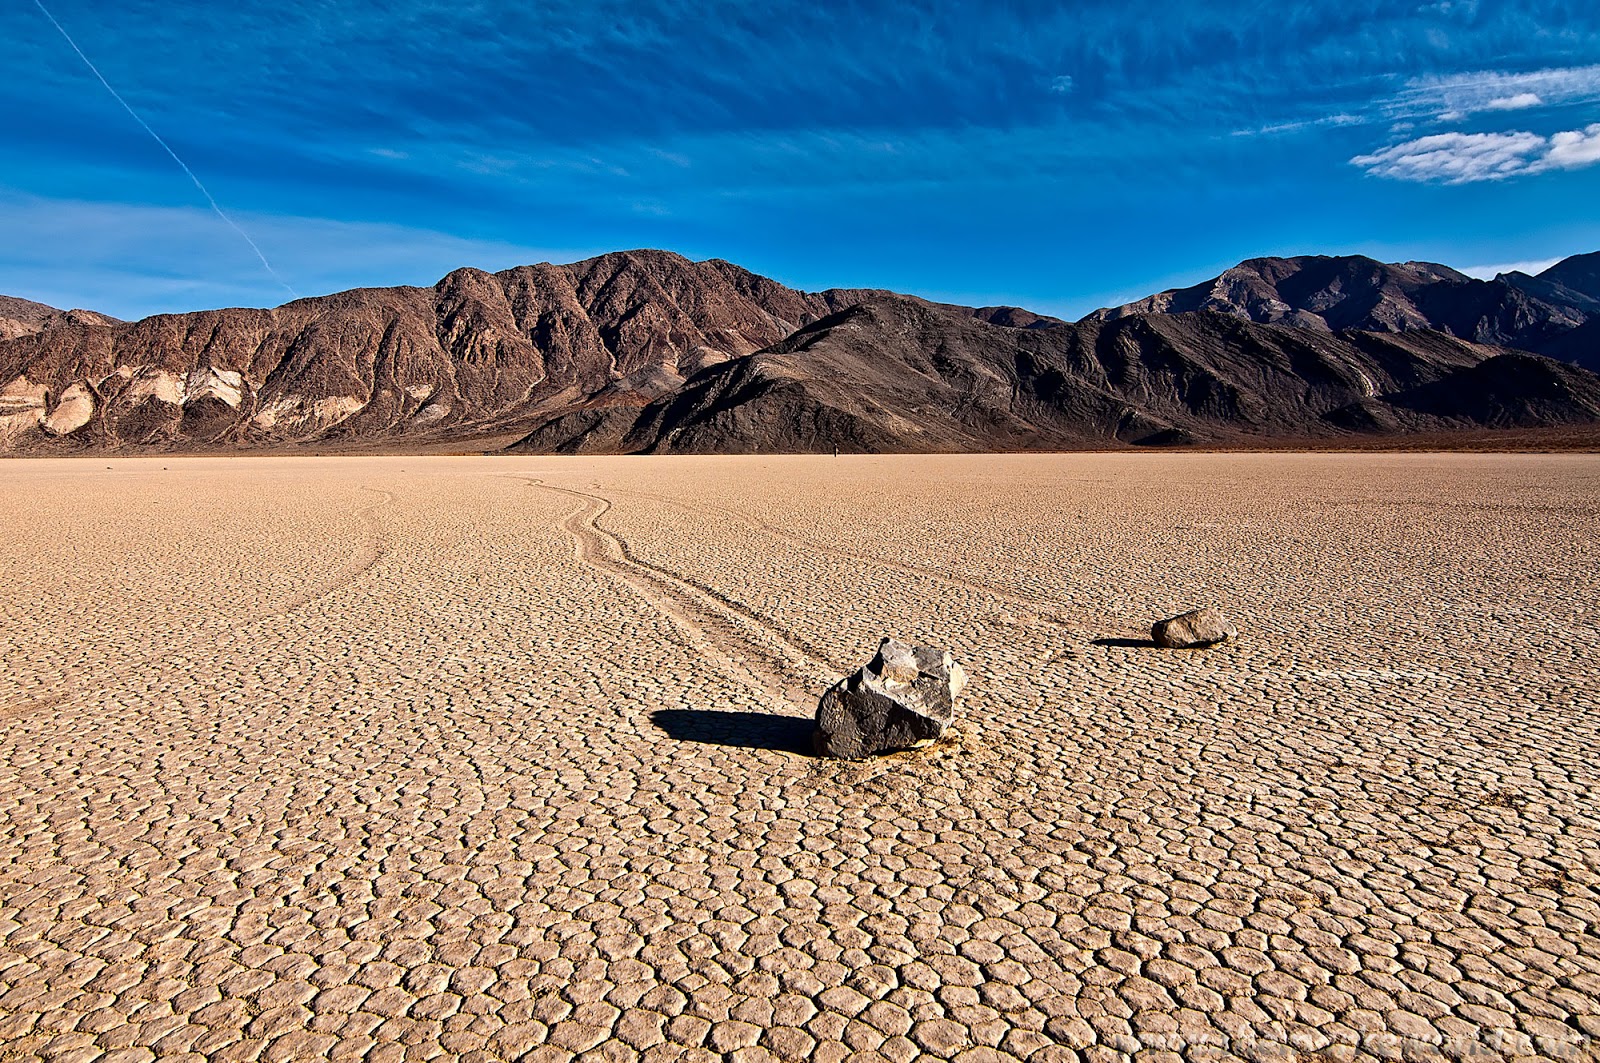 Планета земля пустыня. Национальный парк Долина смерти в Калифорнии. Пустыня Мохаве Долина смерти. Национальный парк Долины смерти, Калифорния.. Долина смерти (Калифорния - Невада).